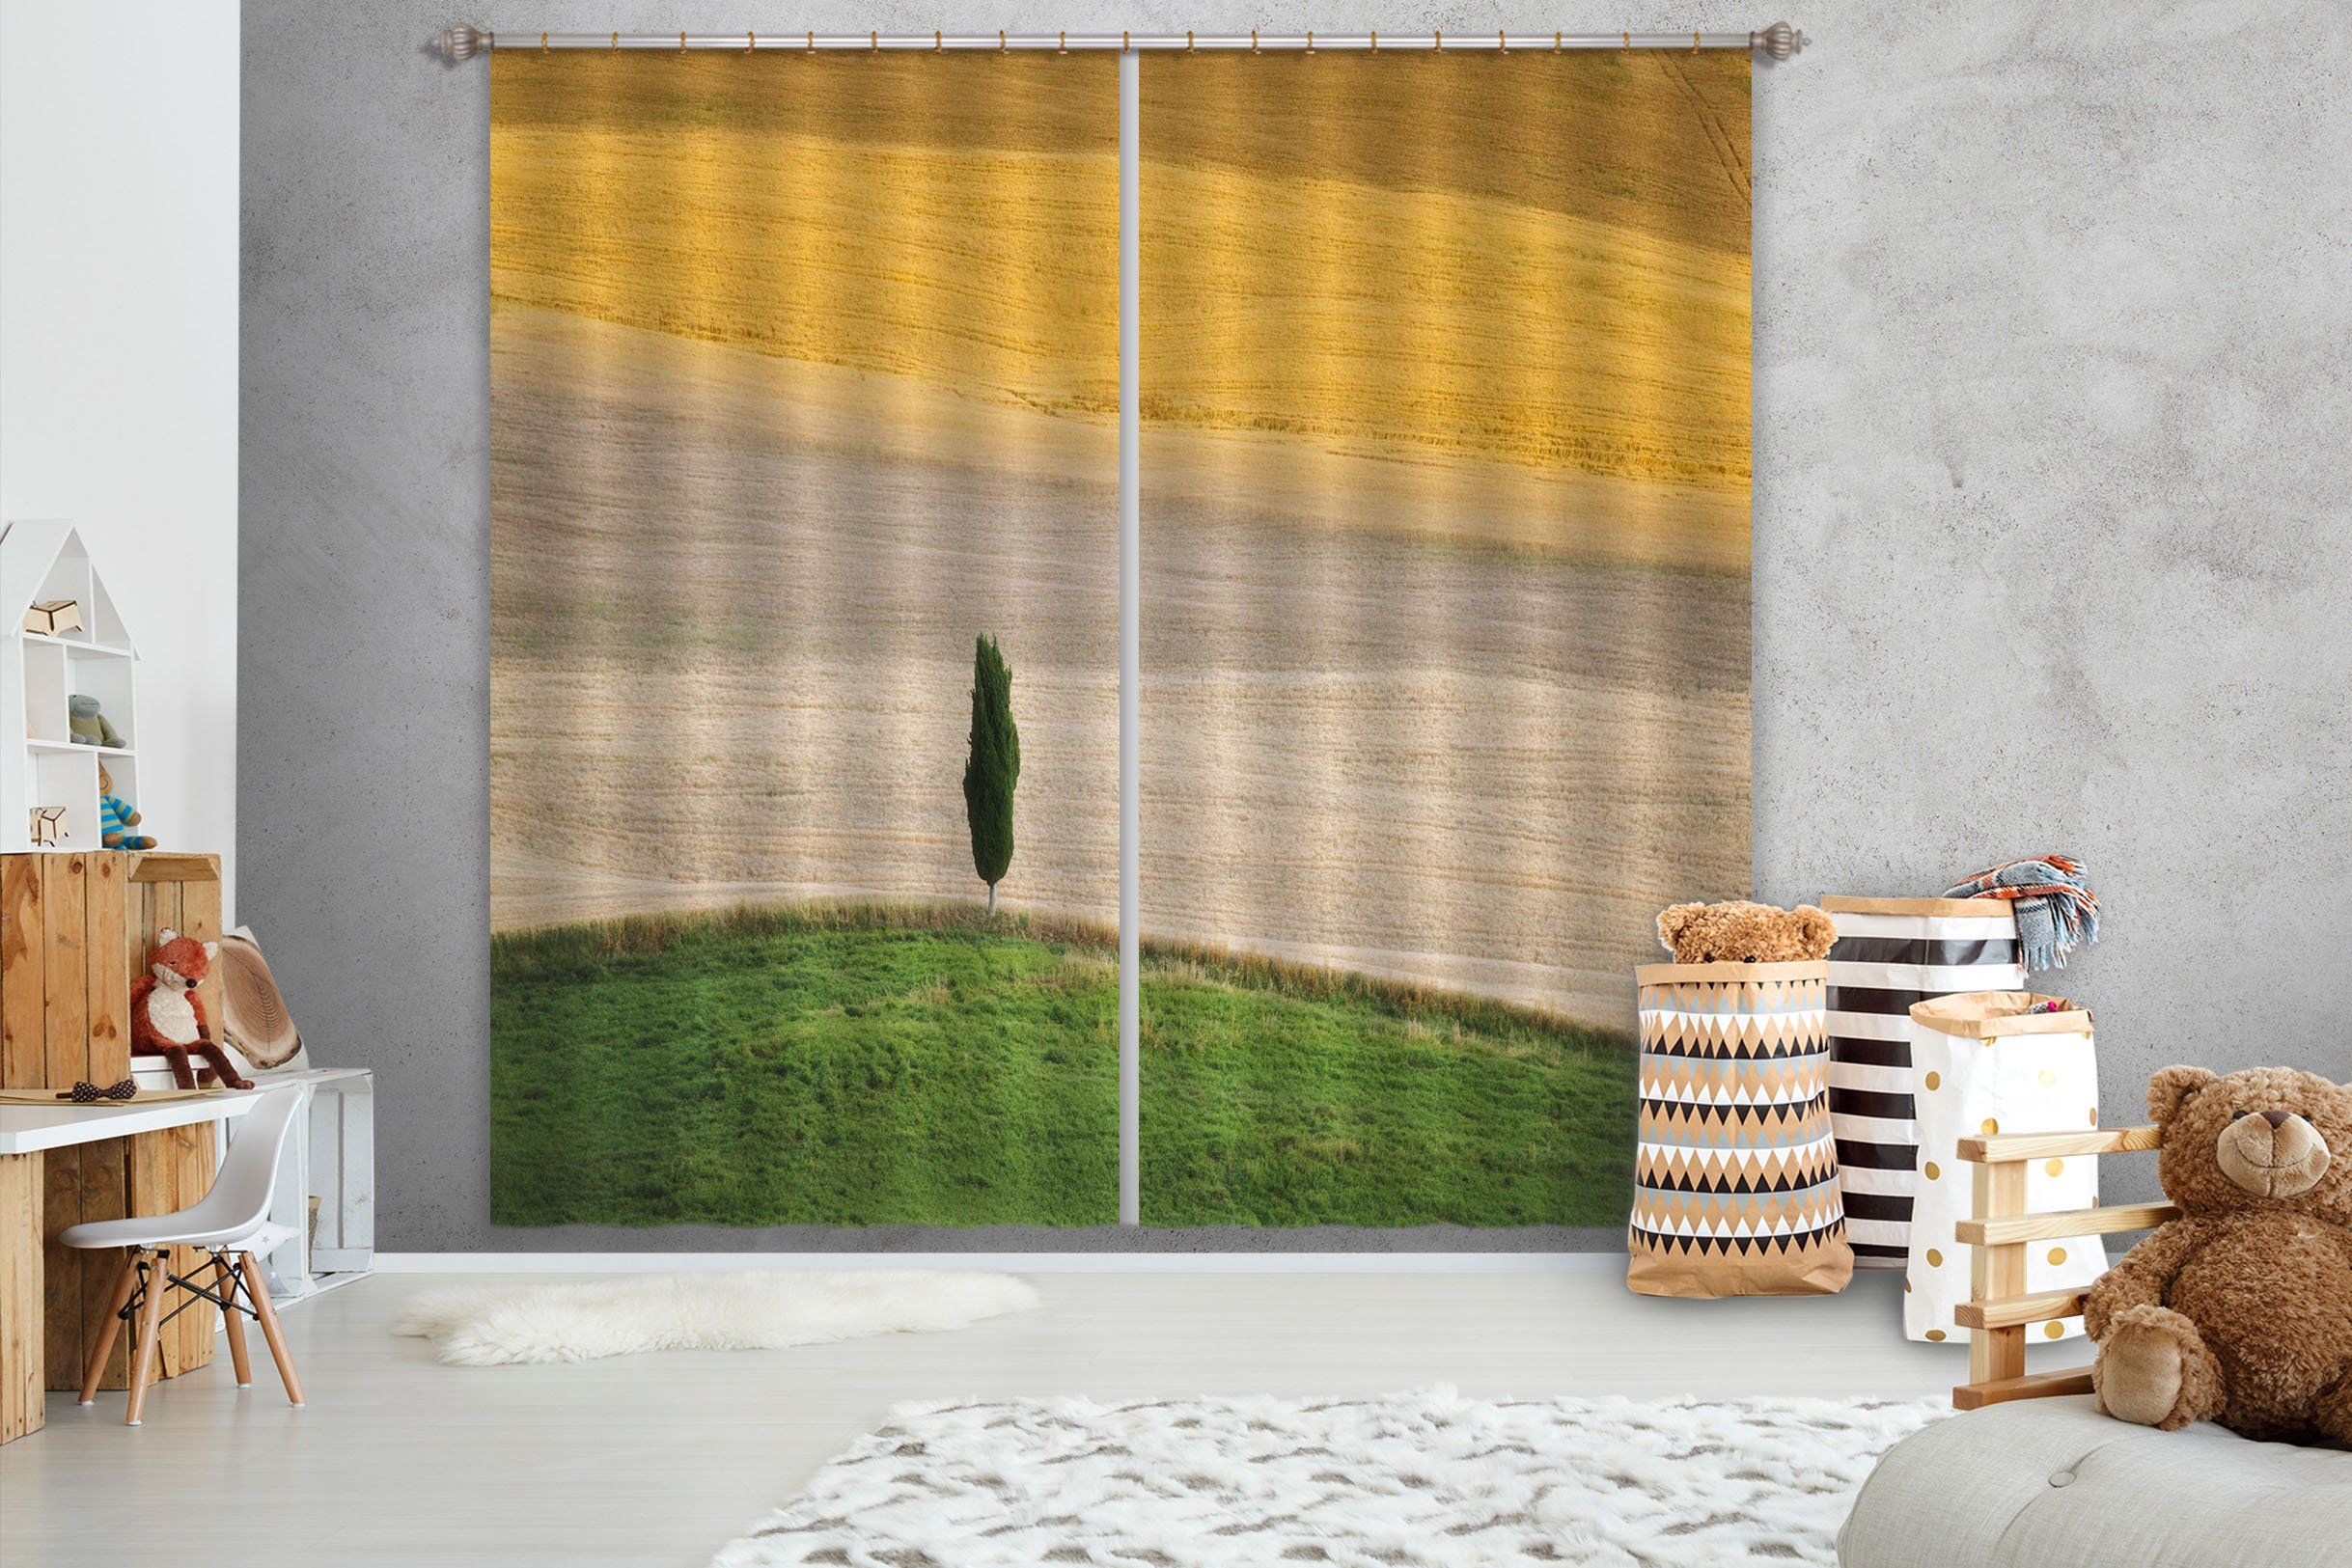 3D Beach Grass 150 Marco Carmassi Curtain Curtains Drapes Curtains AJ Creativity Home 